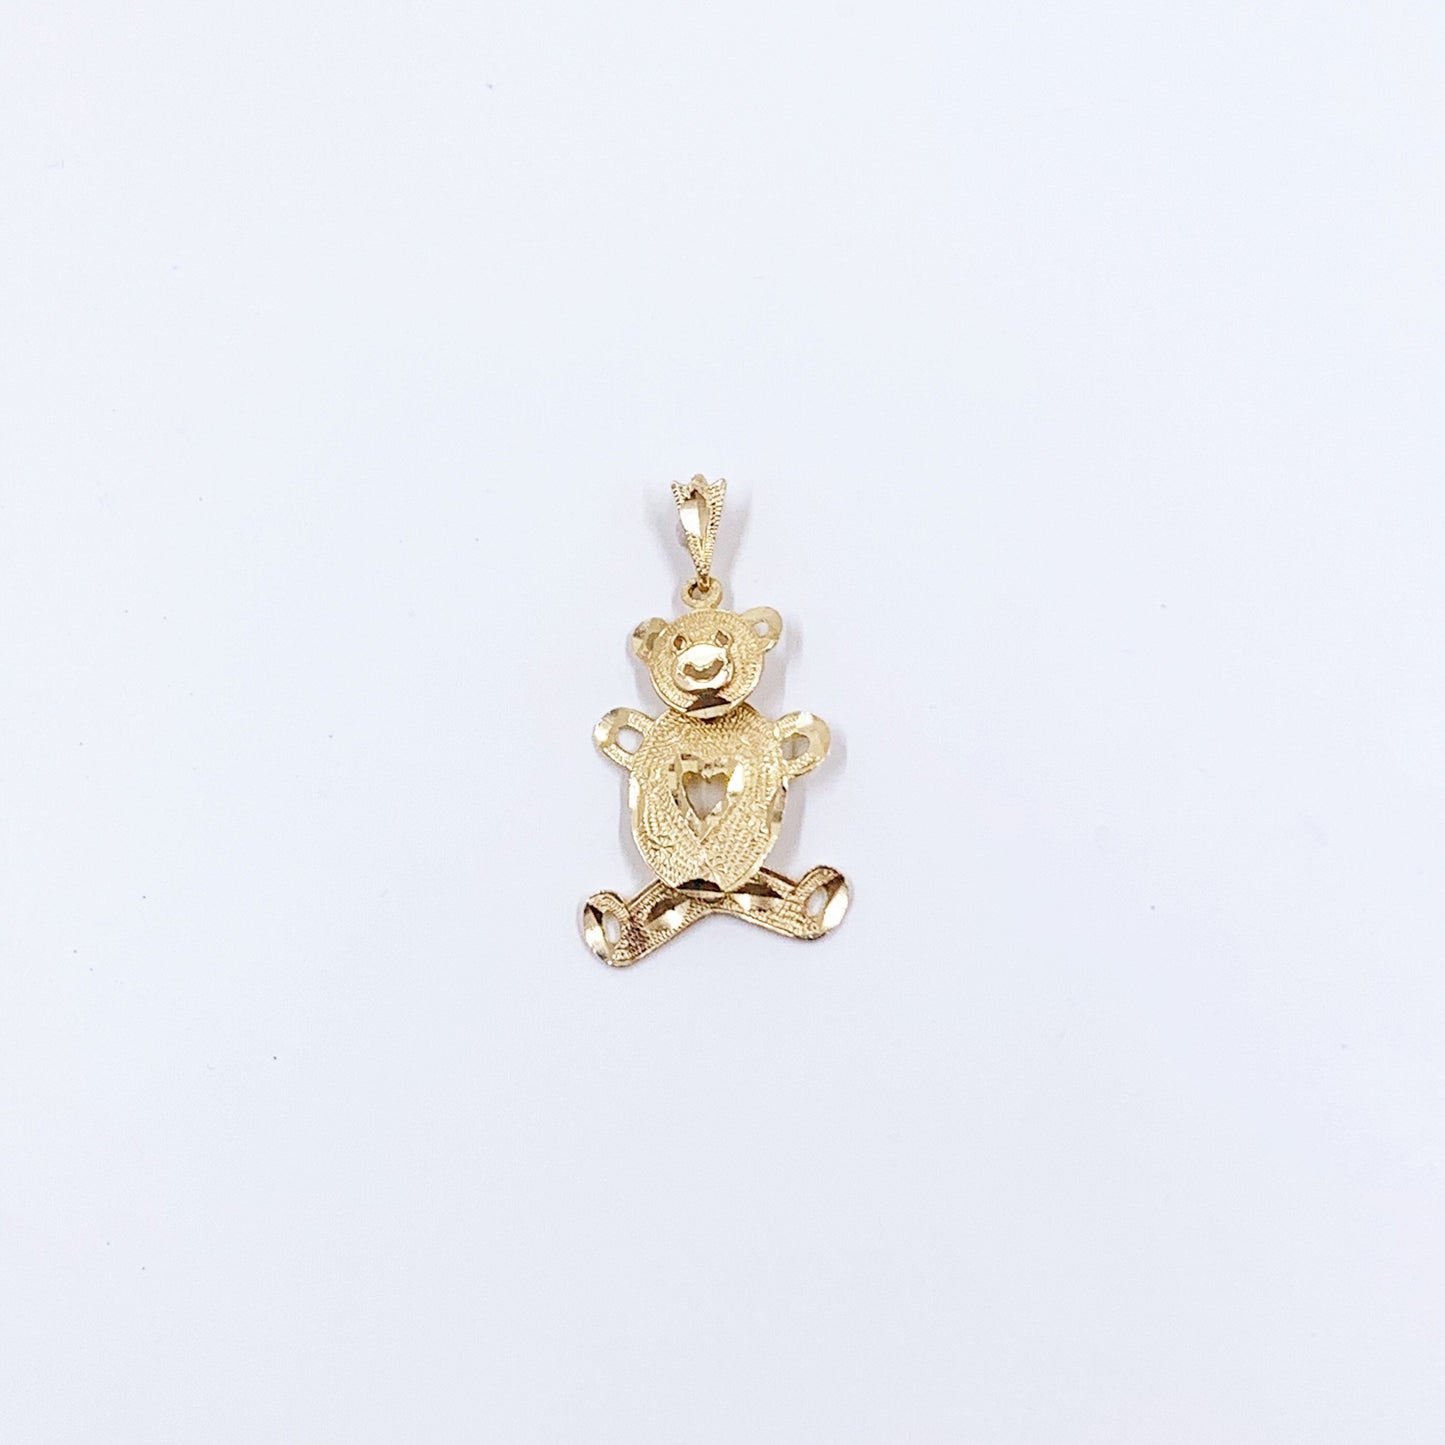 Estate 14k Gold Teddy Bear Pendant | Moveable Teddy Bear Charm